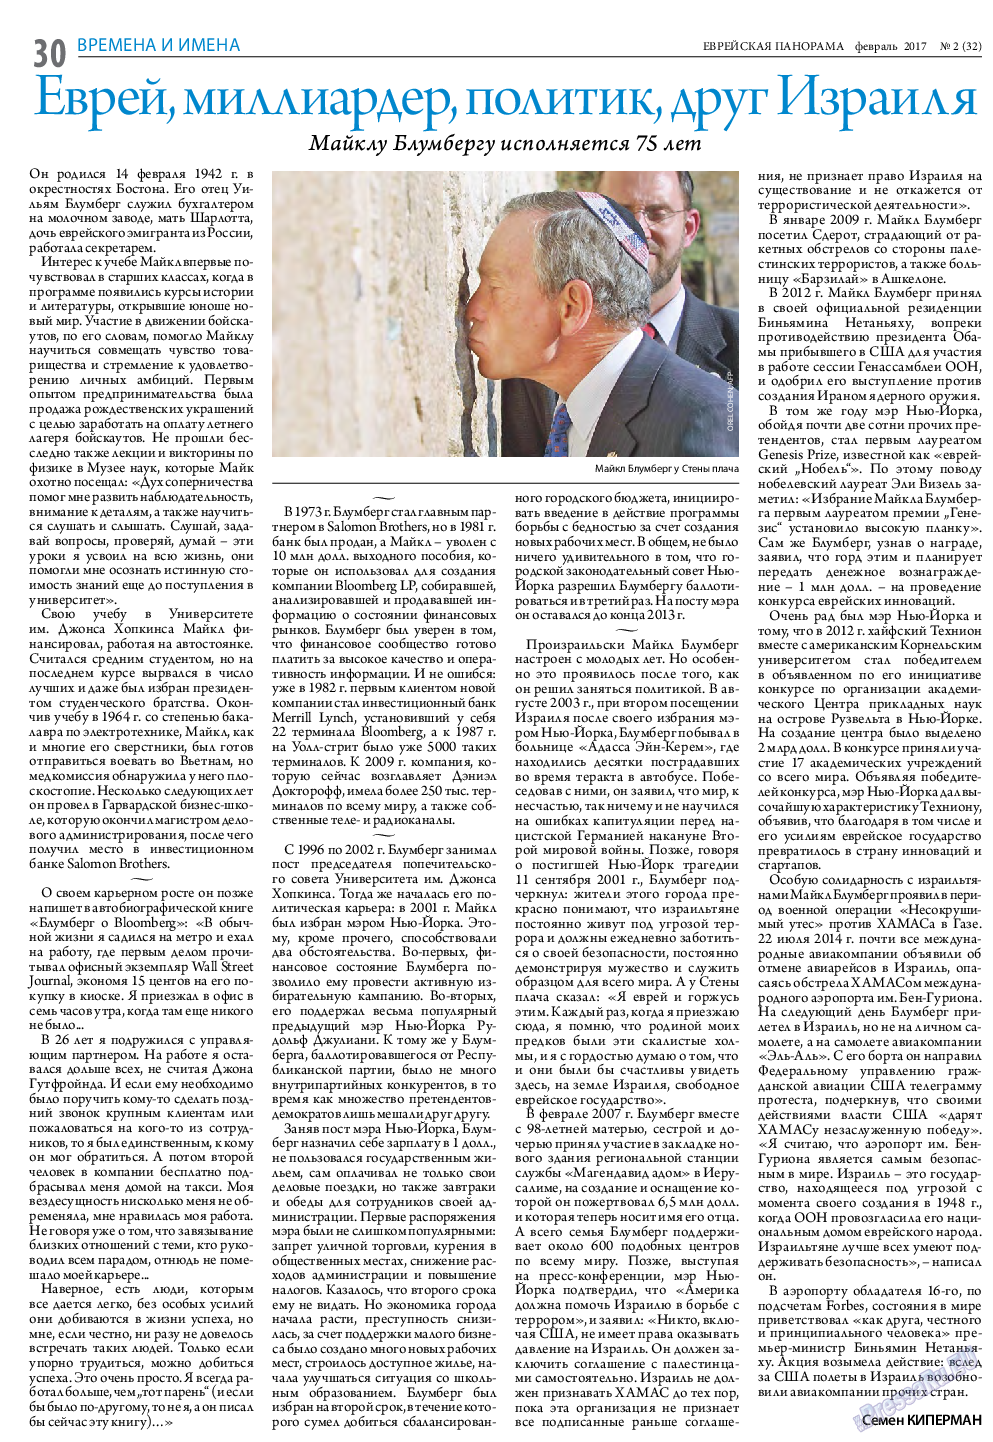 Еврейская панорама (газета). 2017 год, номер 2, стр. 30